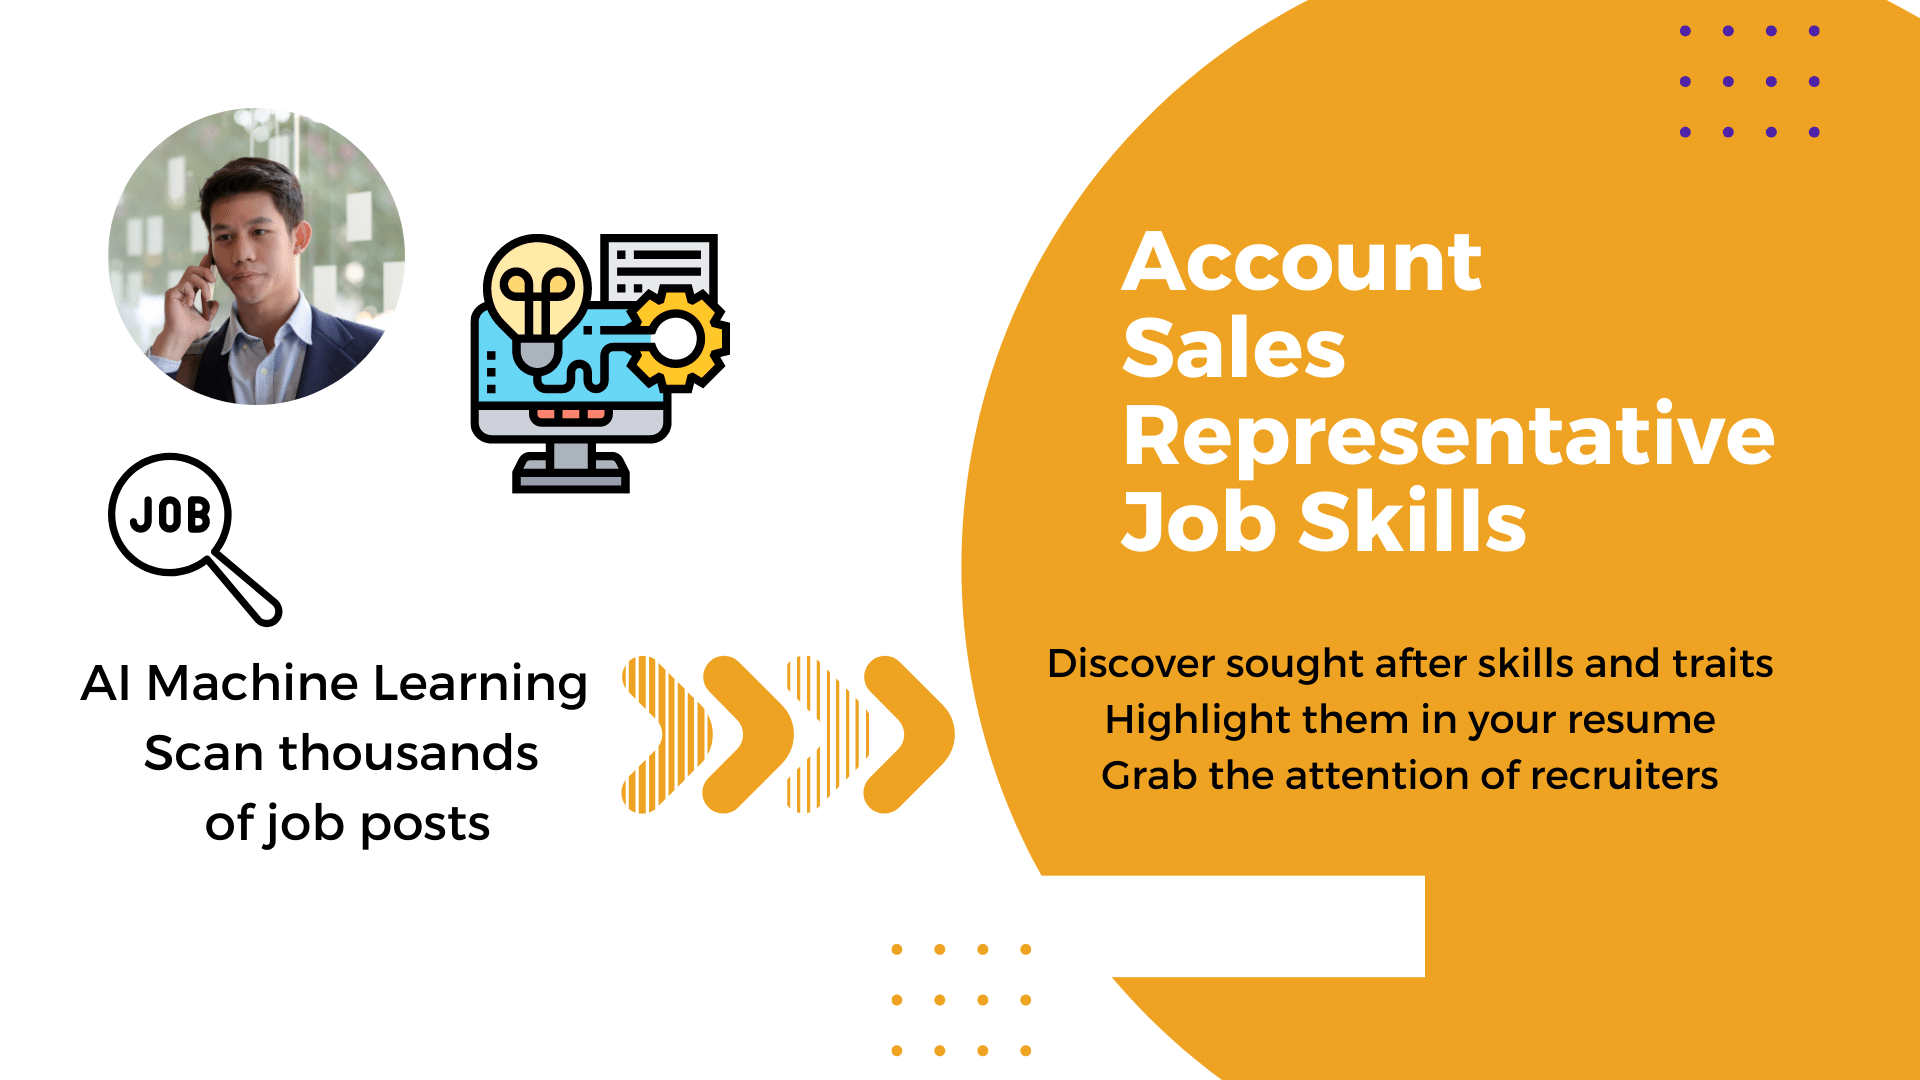 Account / Sales Representative